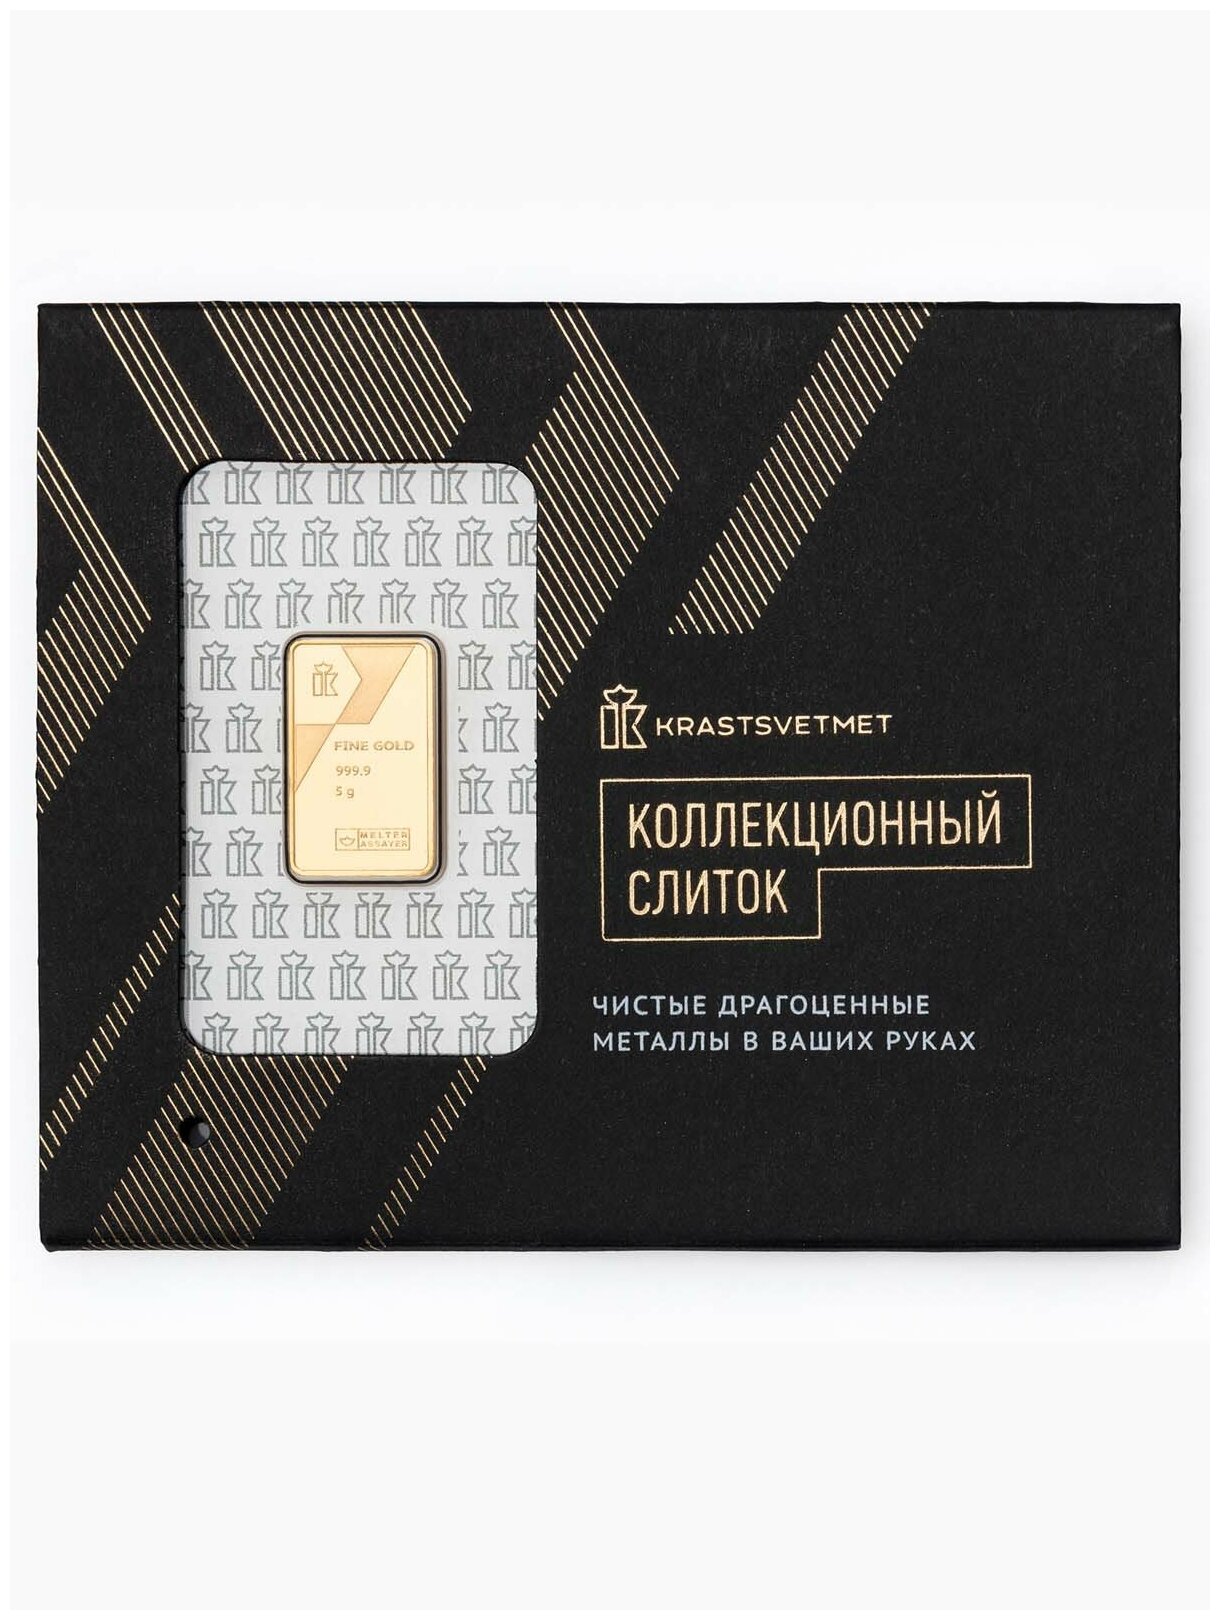 Слиток ювелирный Krastsvetmet из золота 999 пробы / Сувенир / Подарок - 5 грамм